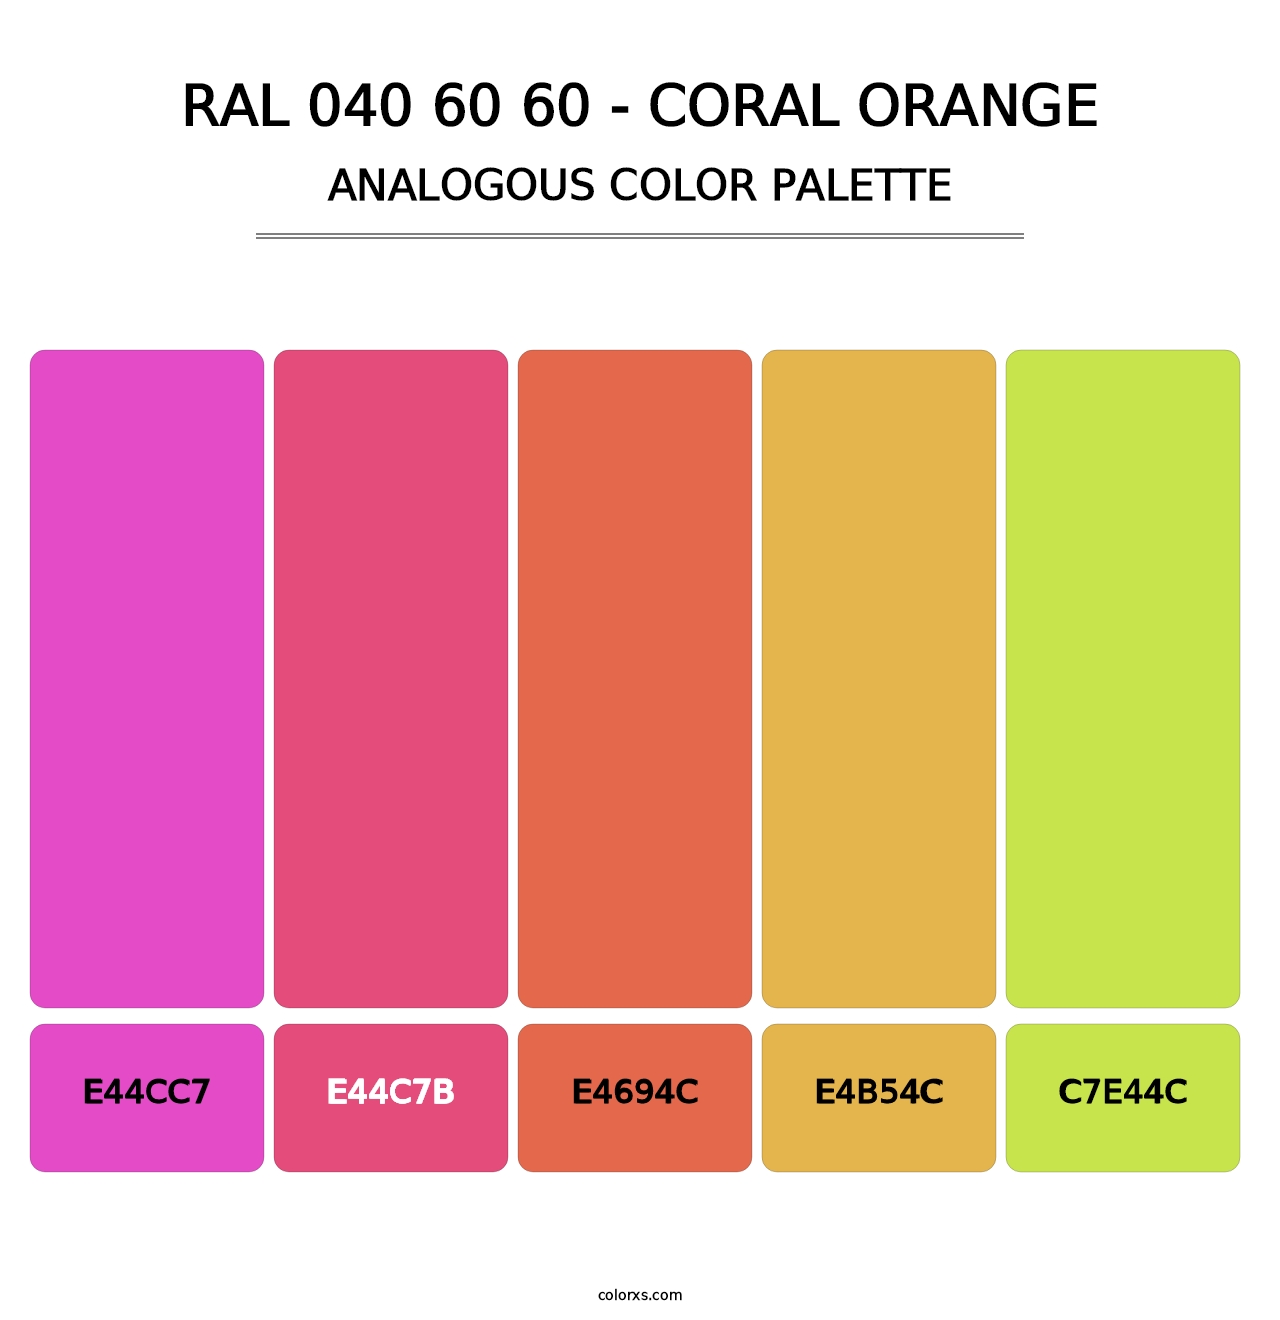 RAL 040 60 60 - Coral Orange - Analogous Color Palette